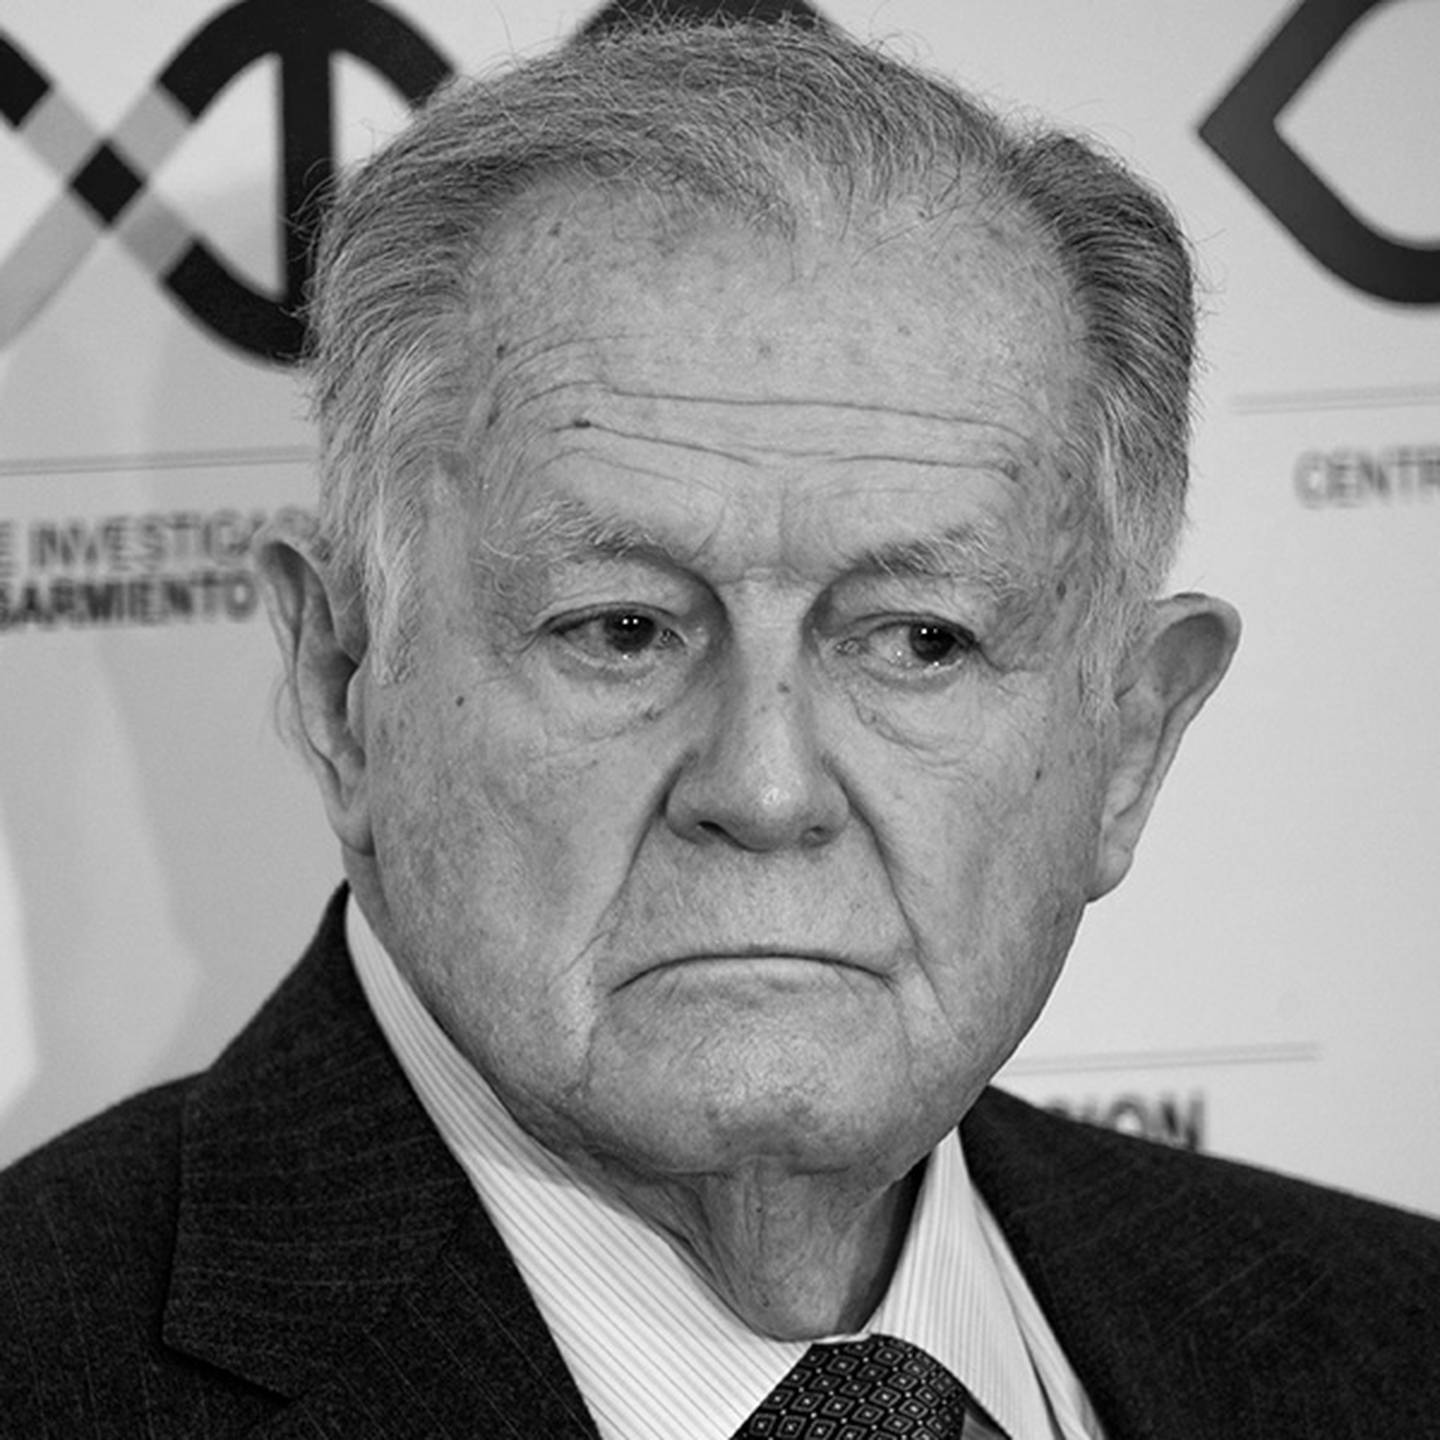 Luis Carlos Sarmiento Angulo